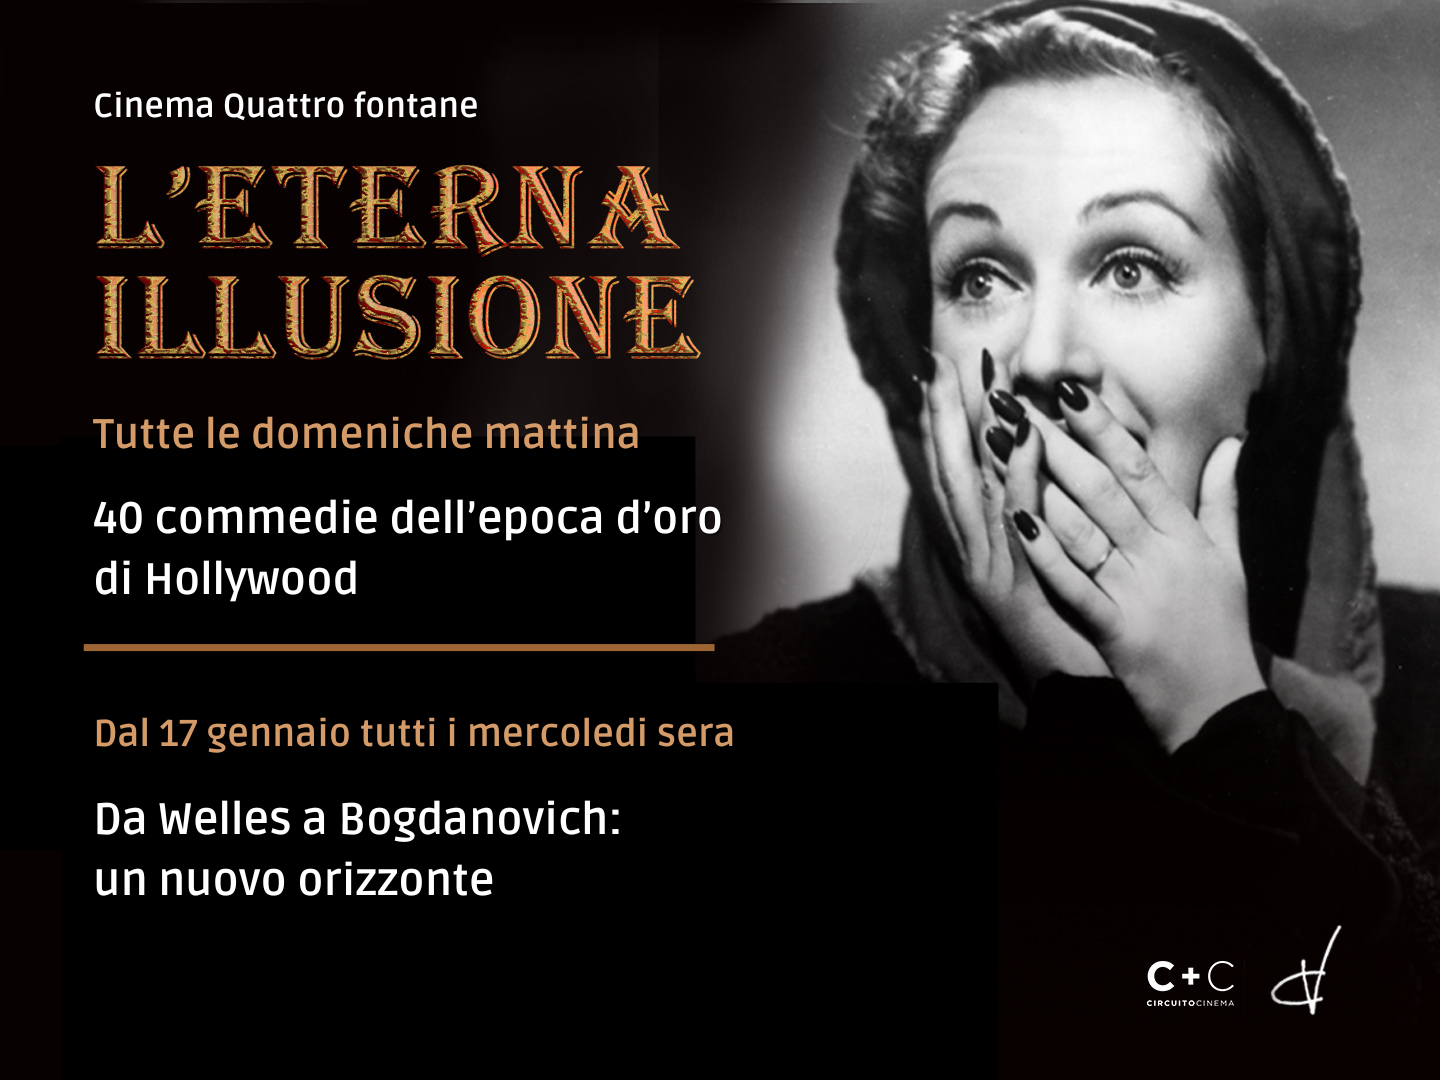 Successo per “L’eterna illusione” al Cinema Quattro Fontane di Roma che raddoppia e arriva anche il mercoledì sera